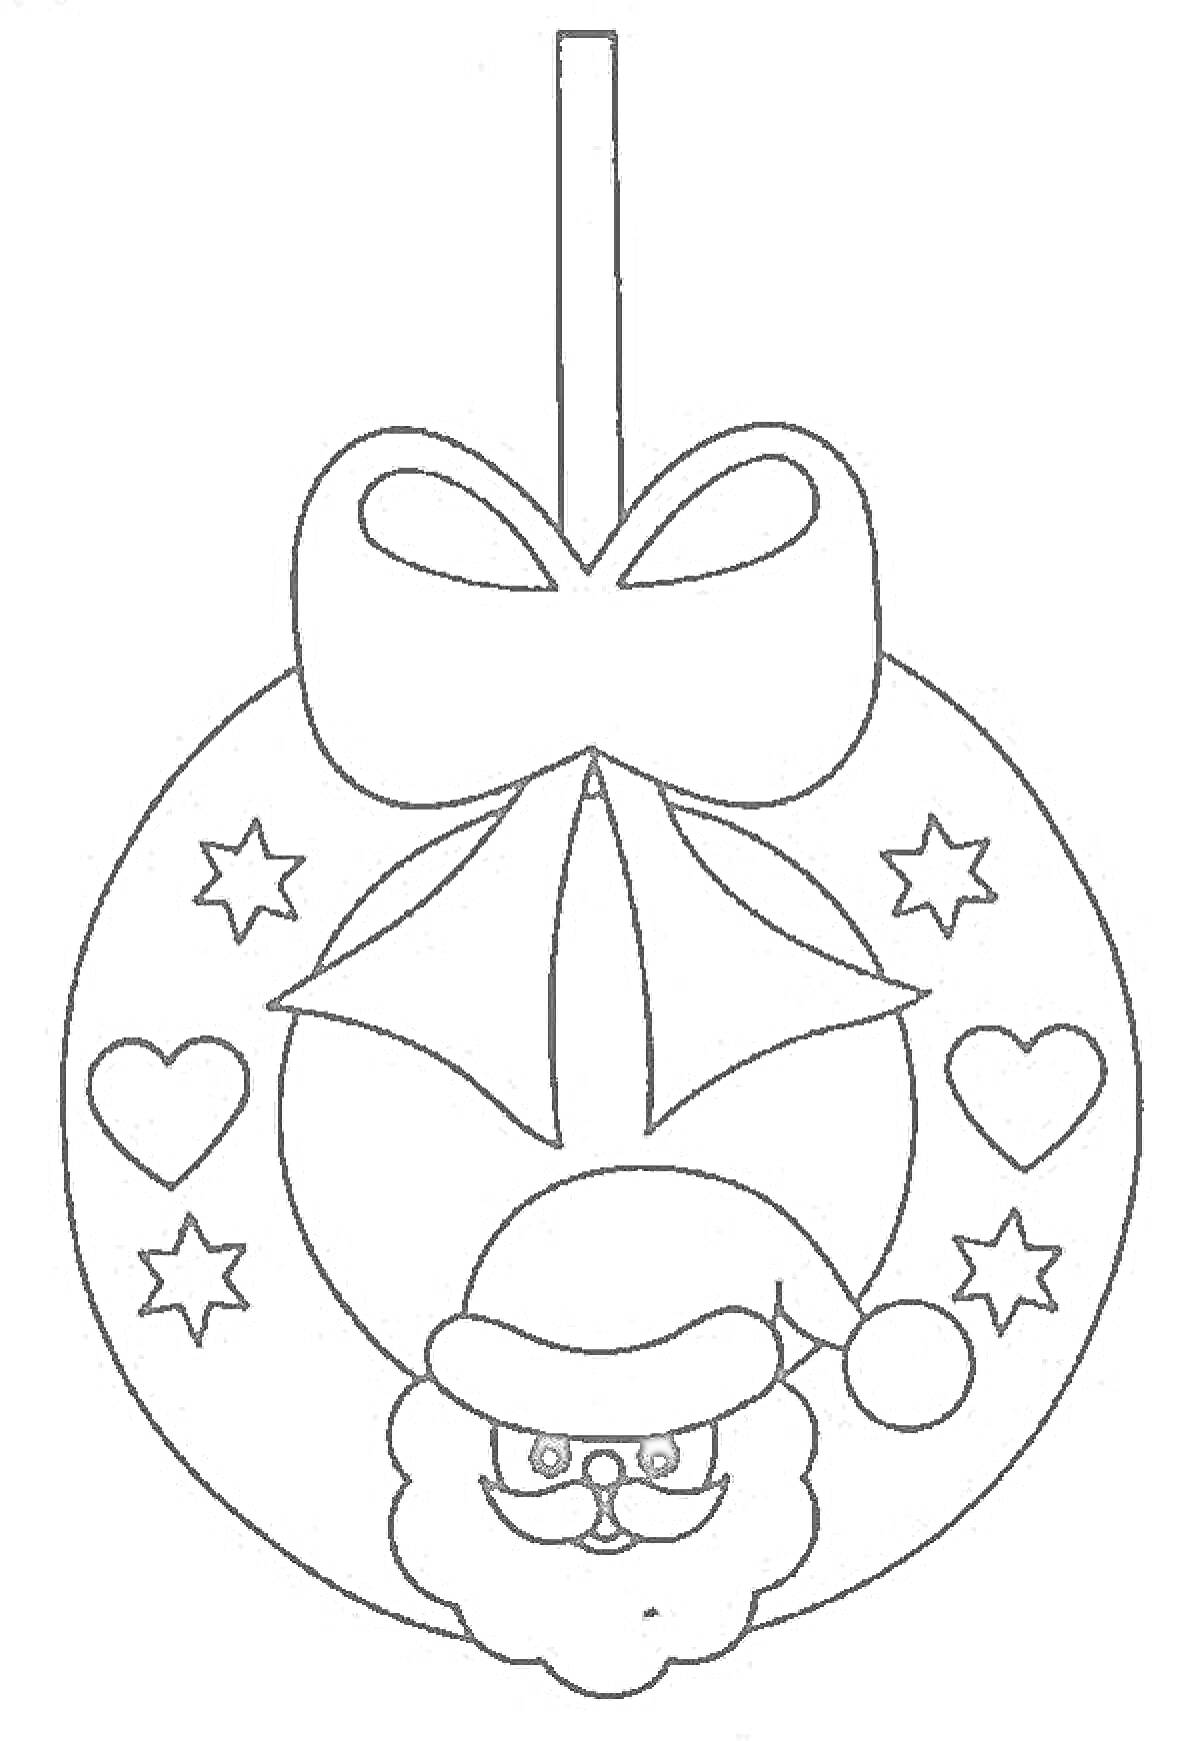 Раскраска Новогодний шар с Дедом Морозом, бантом, сердечками и звездами